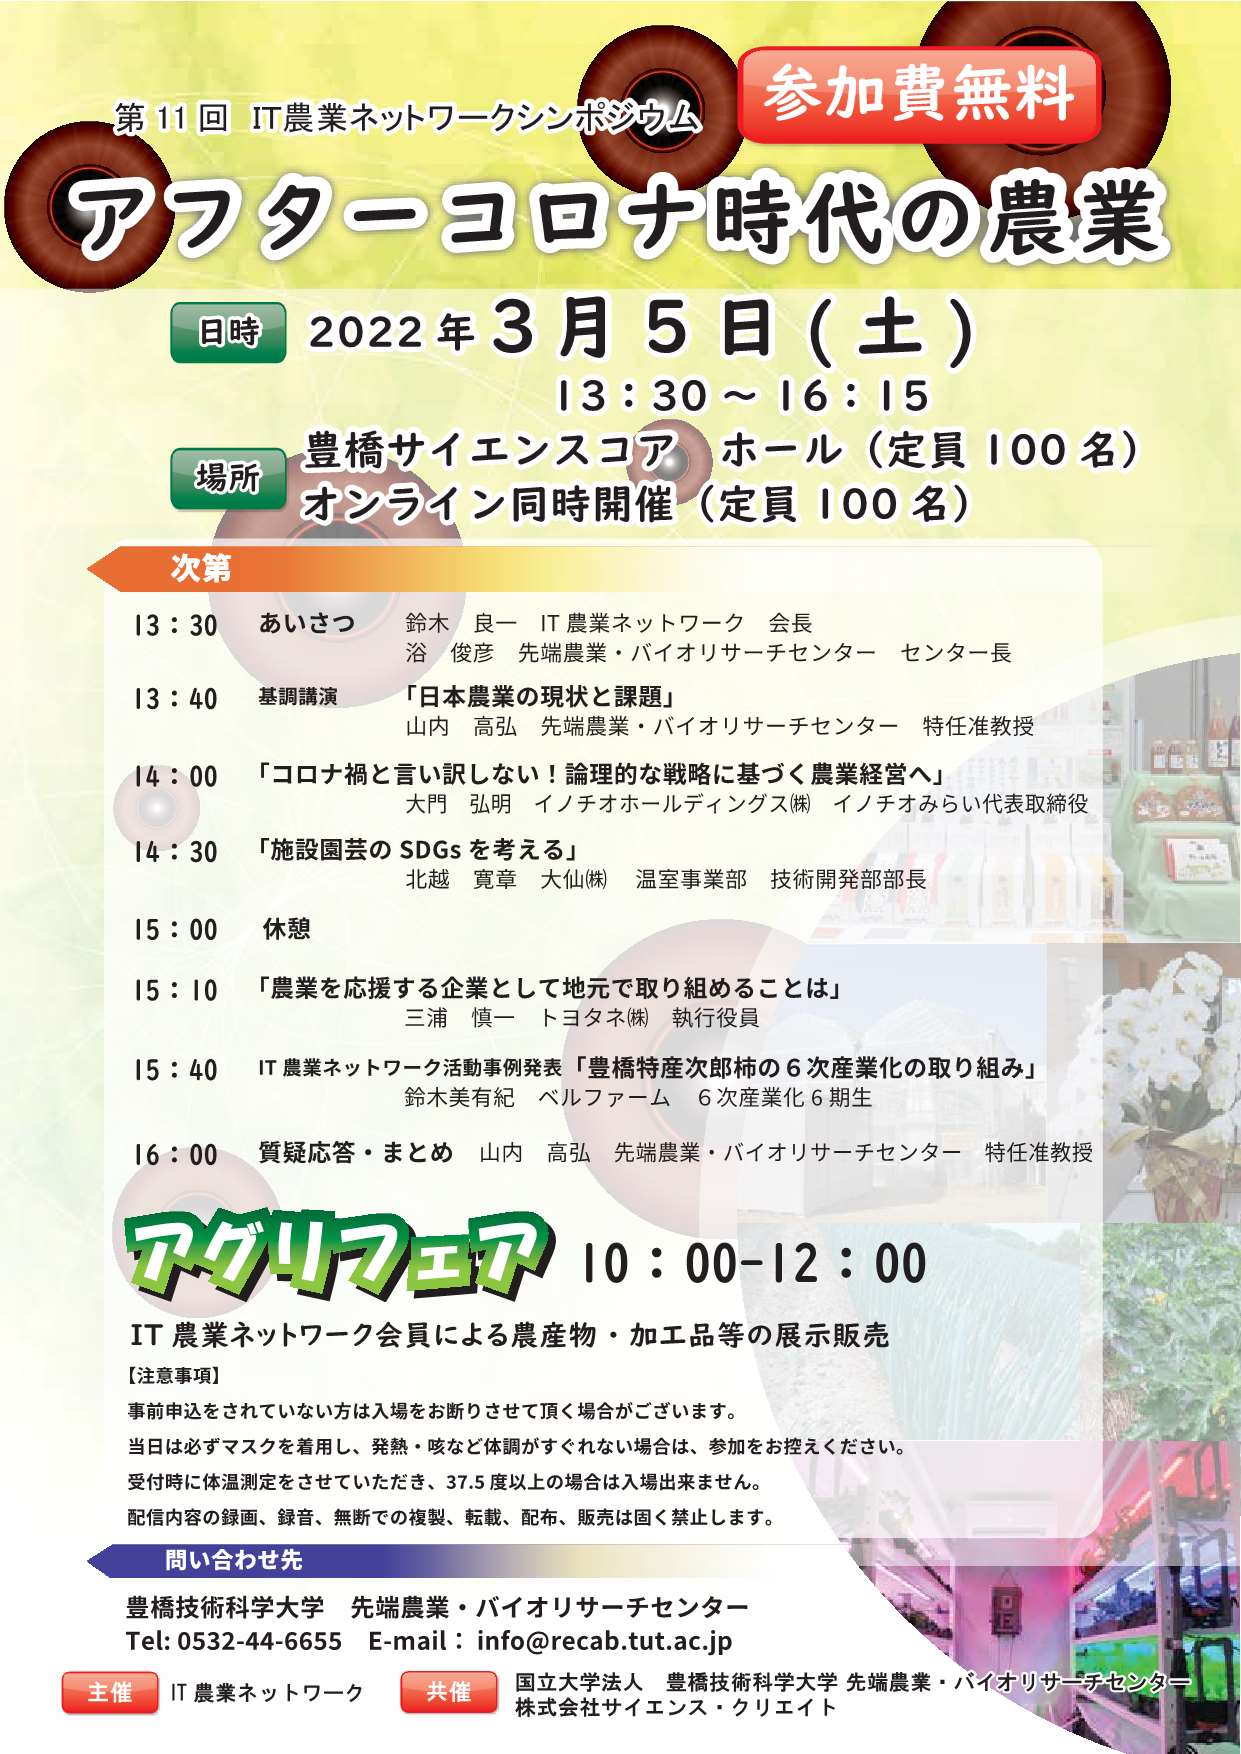 https://www.tut.ac.jp/event/images/220305vaio1.jpg